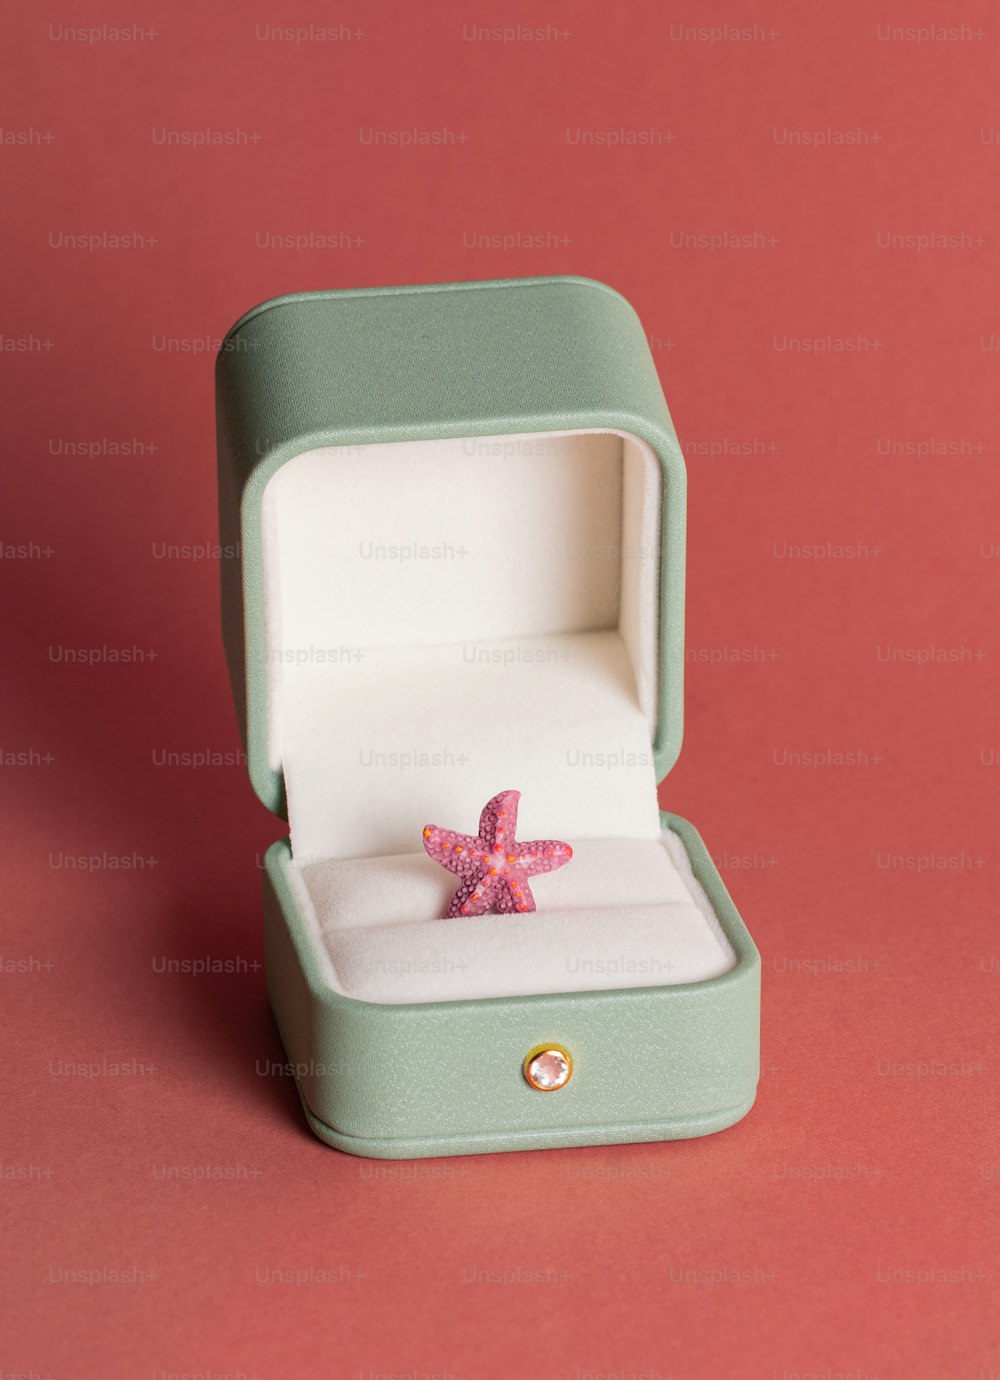 Ein Seesternring in einer Schachtel auf rosafarbenem Hintergrund